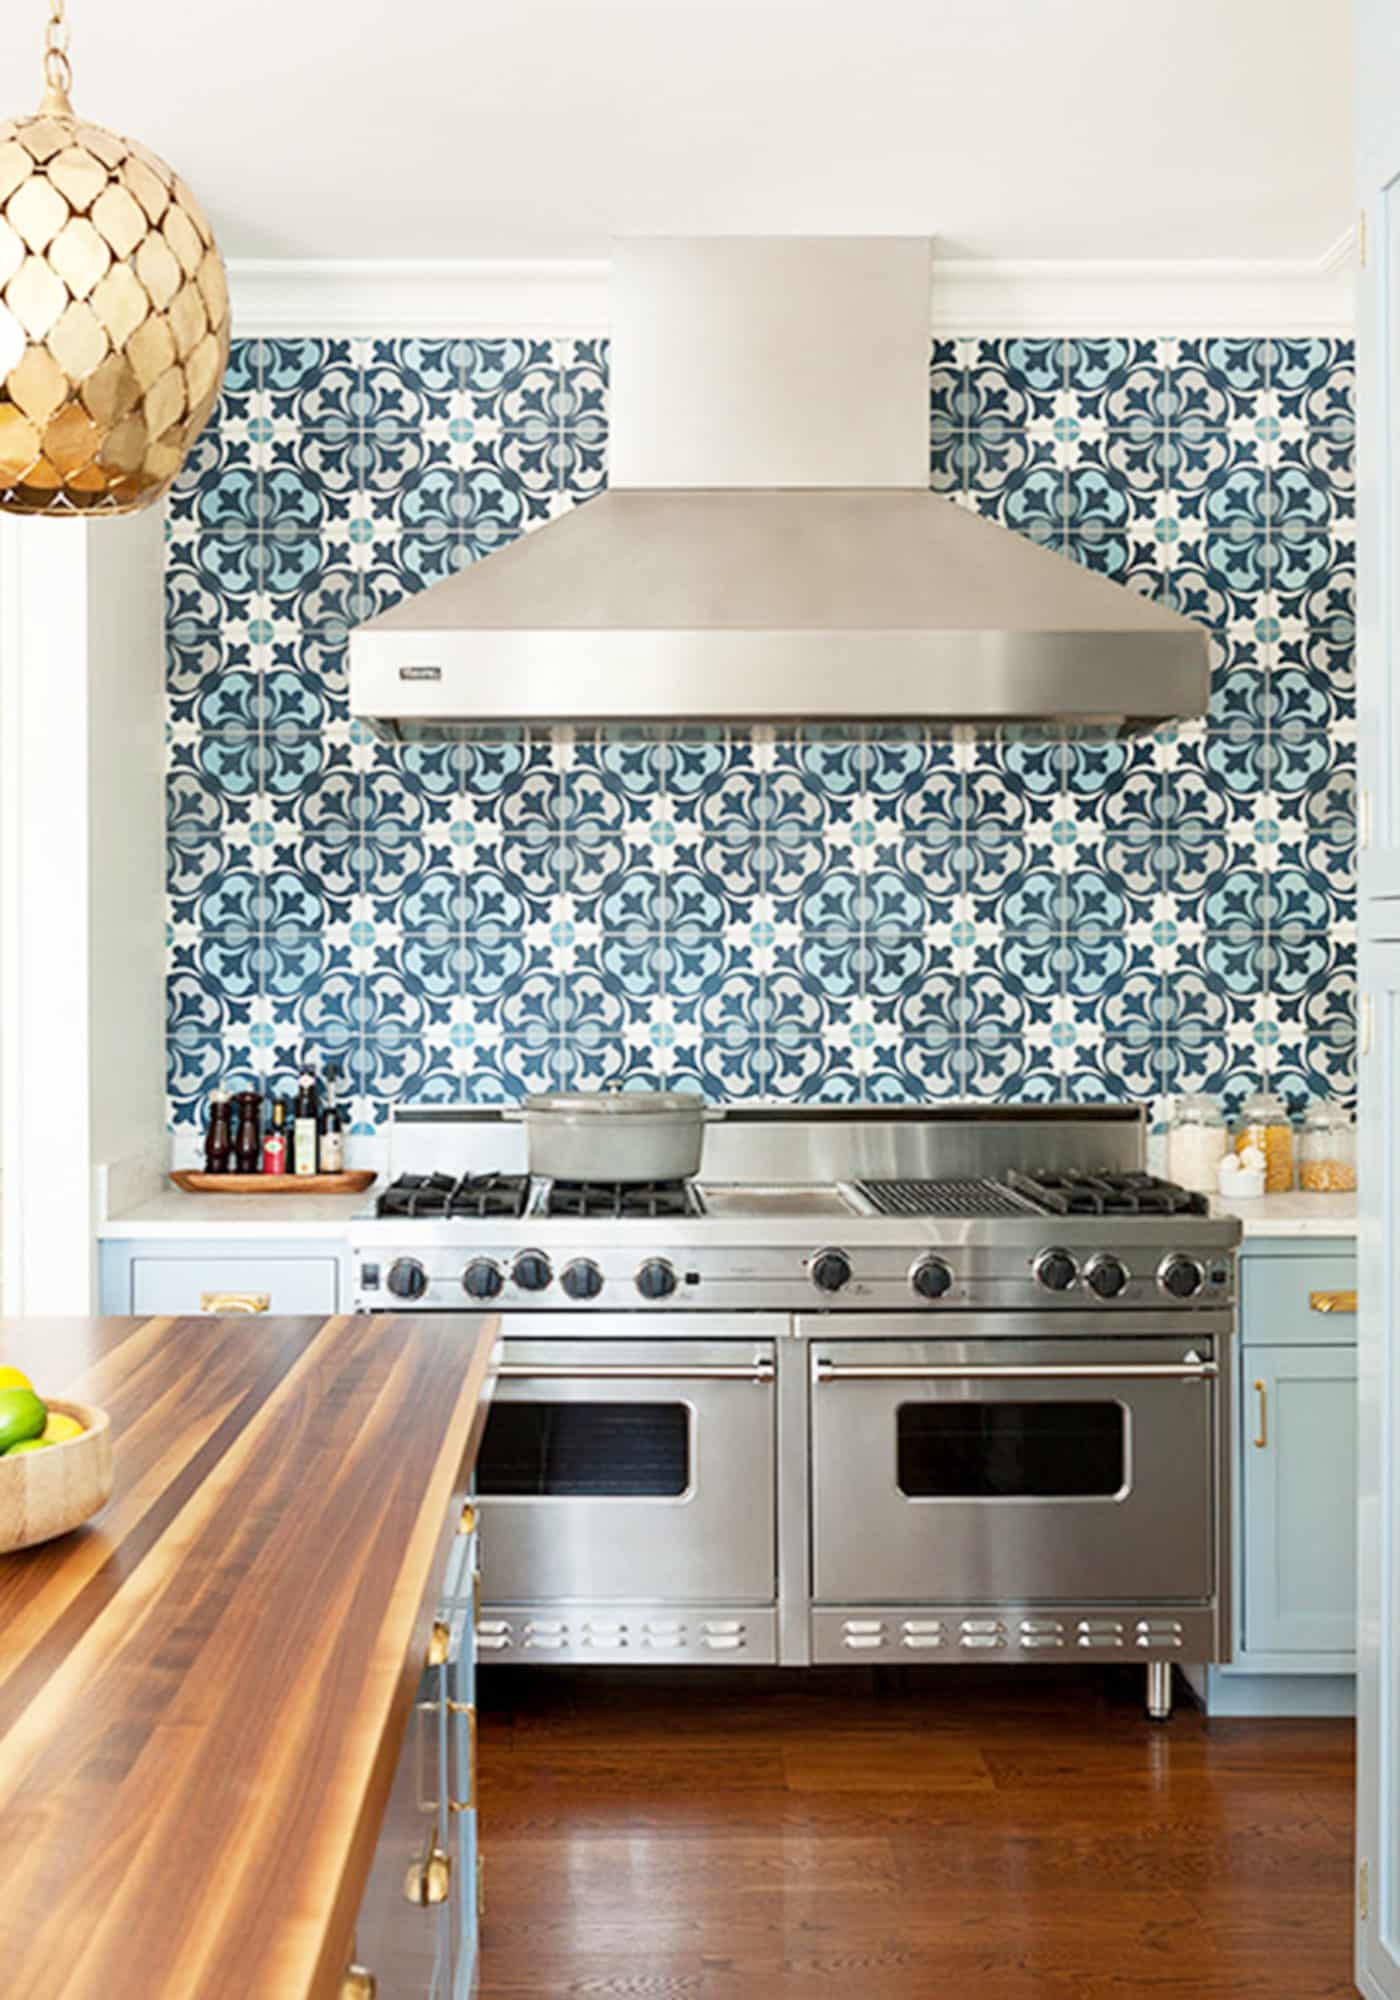 Kitchen Tile Ideas For Backsplash Image To U